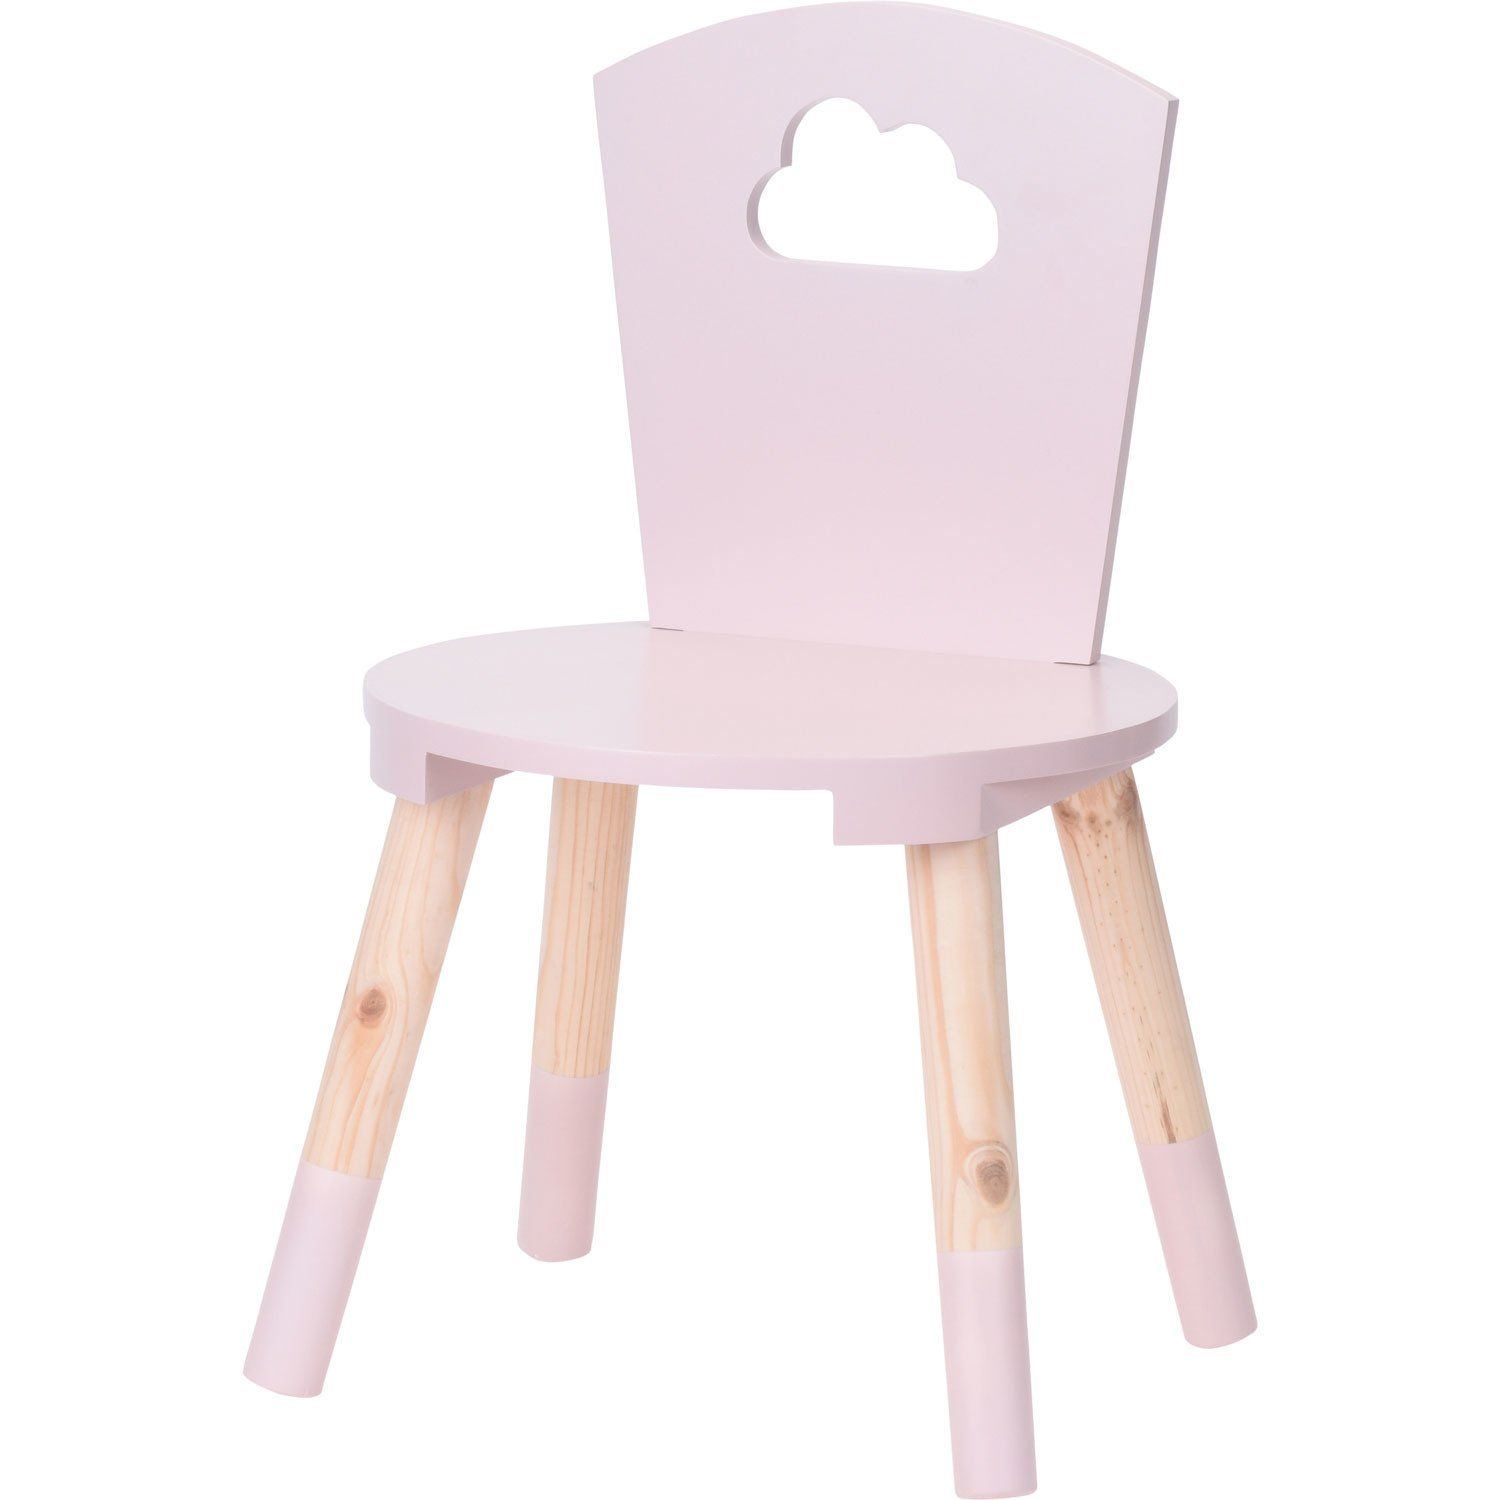 Dětská židle, růžová - EMAKO.CZ s.r.o.